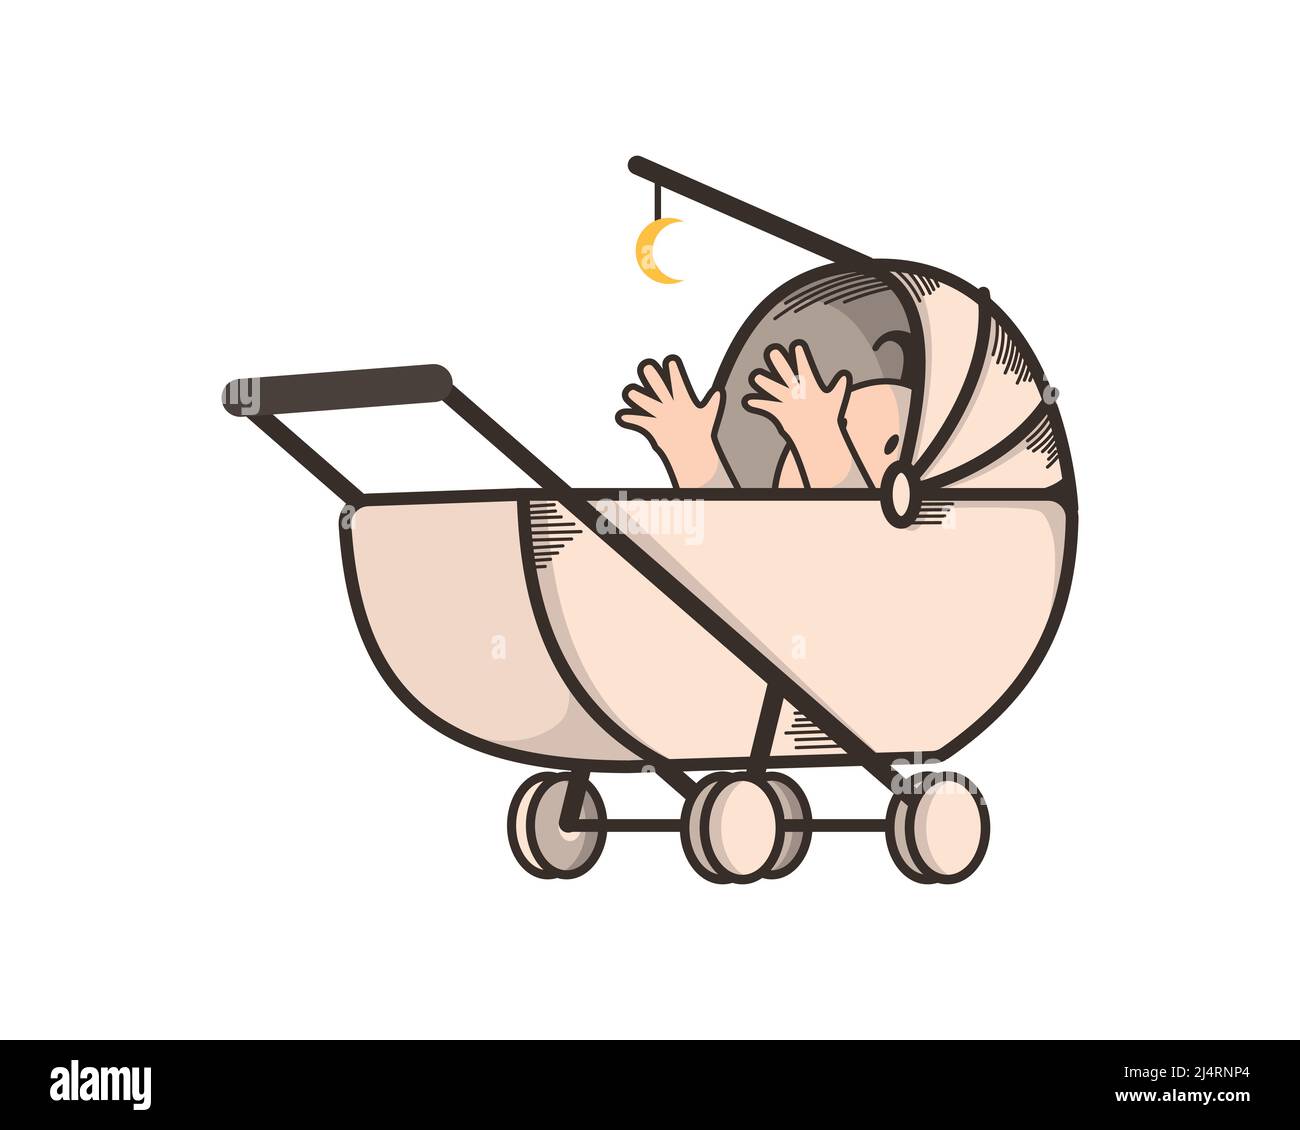 Niedliche und verspielte Baby auf Kinderwagen Illustration Vektor Stock Vektor